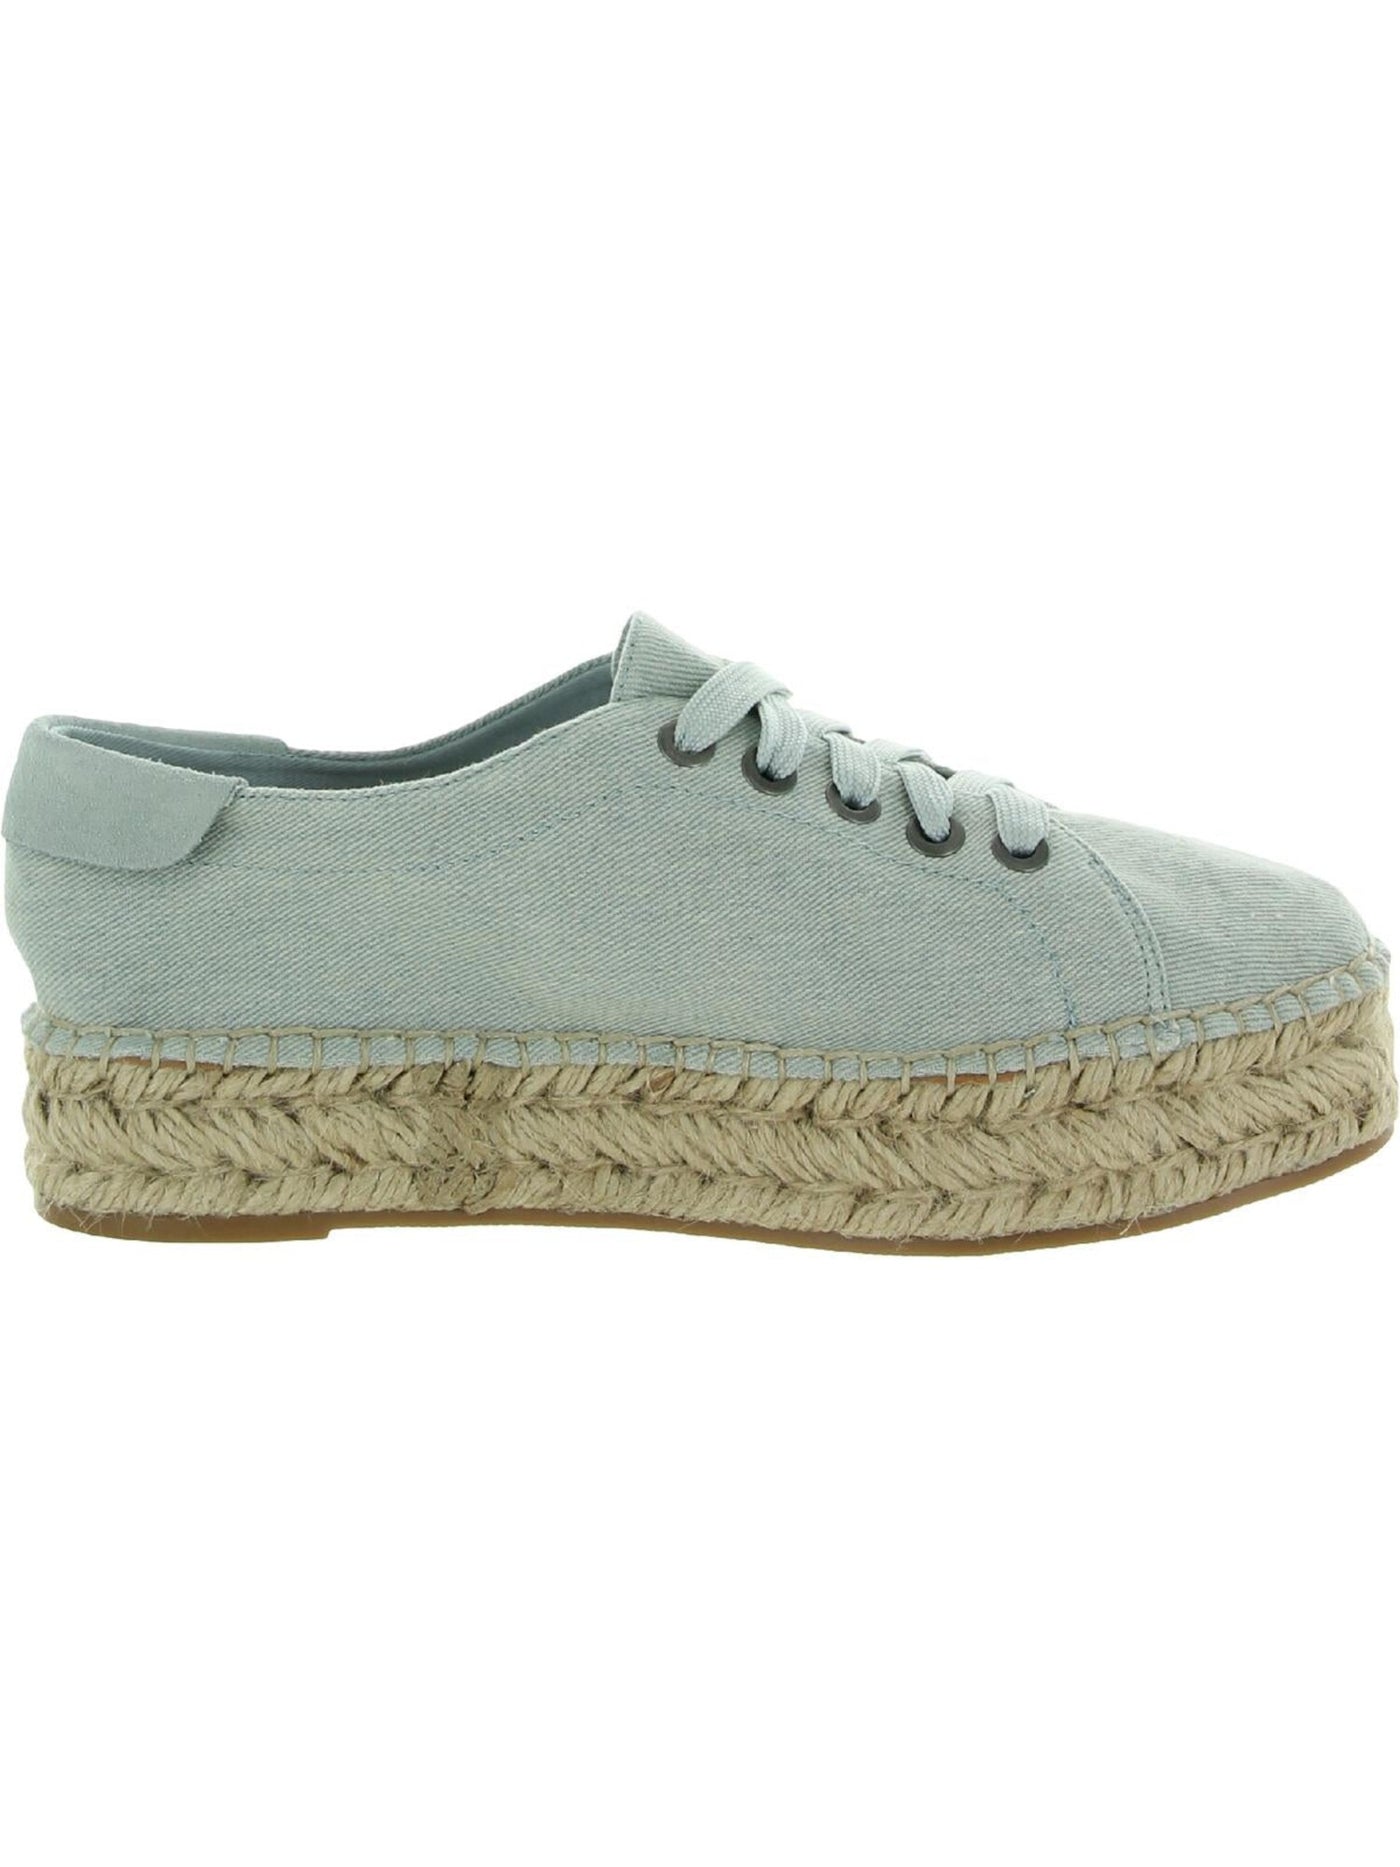 SPLENDID Womens Denim Blue Espadrille Laurel Round Toe Platform Lace-Up Athletic Sneakers Shoes 6.5 M